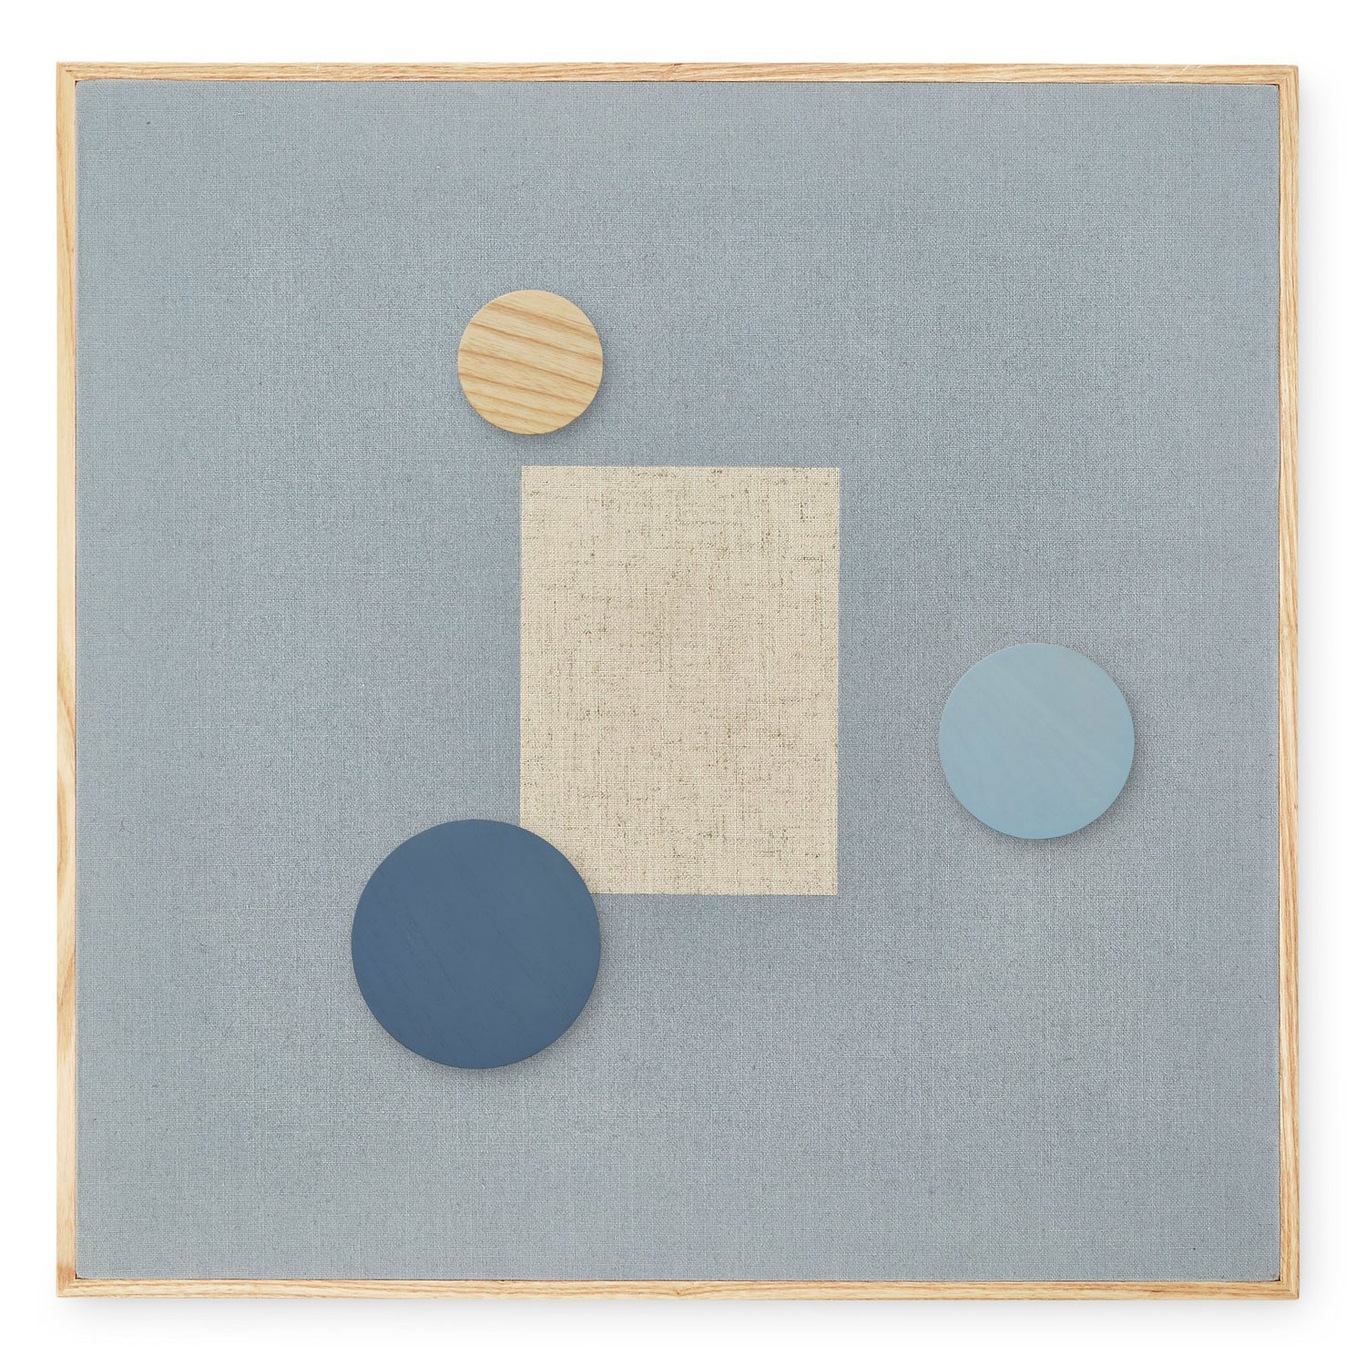 Prikbord Magnetisch 51,2x51,2 cm, Blauw